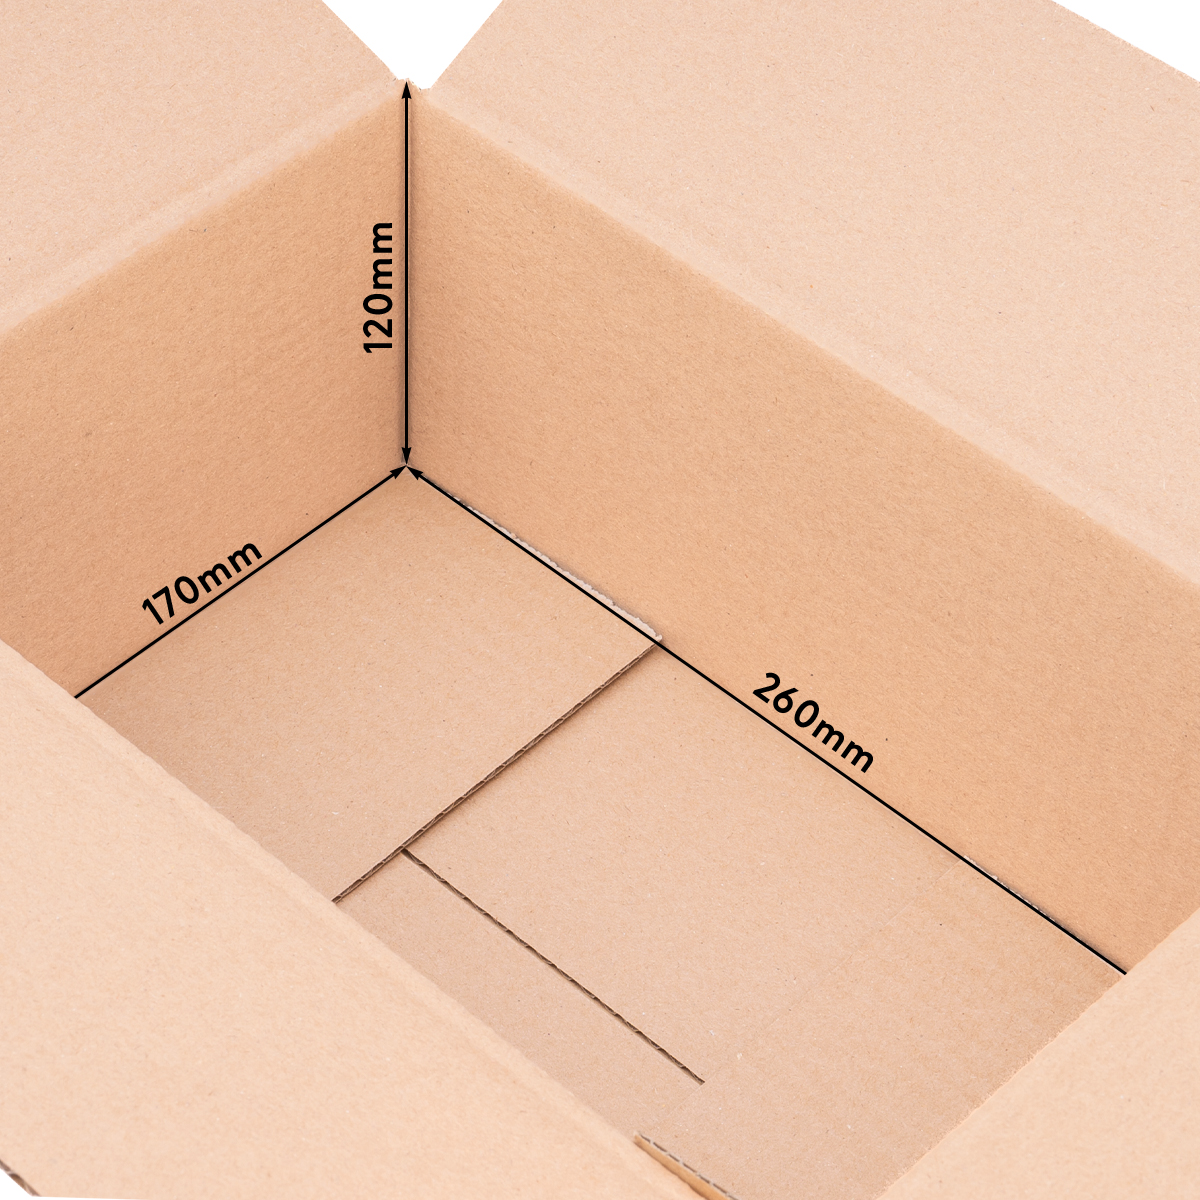 Cardboard box, single wall, 260x170x120 mm - KK 27